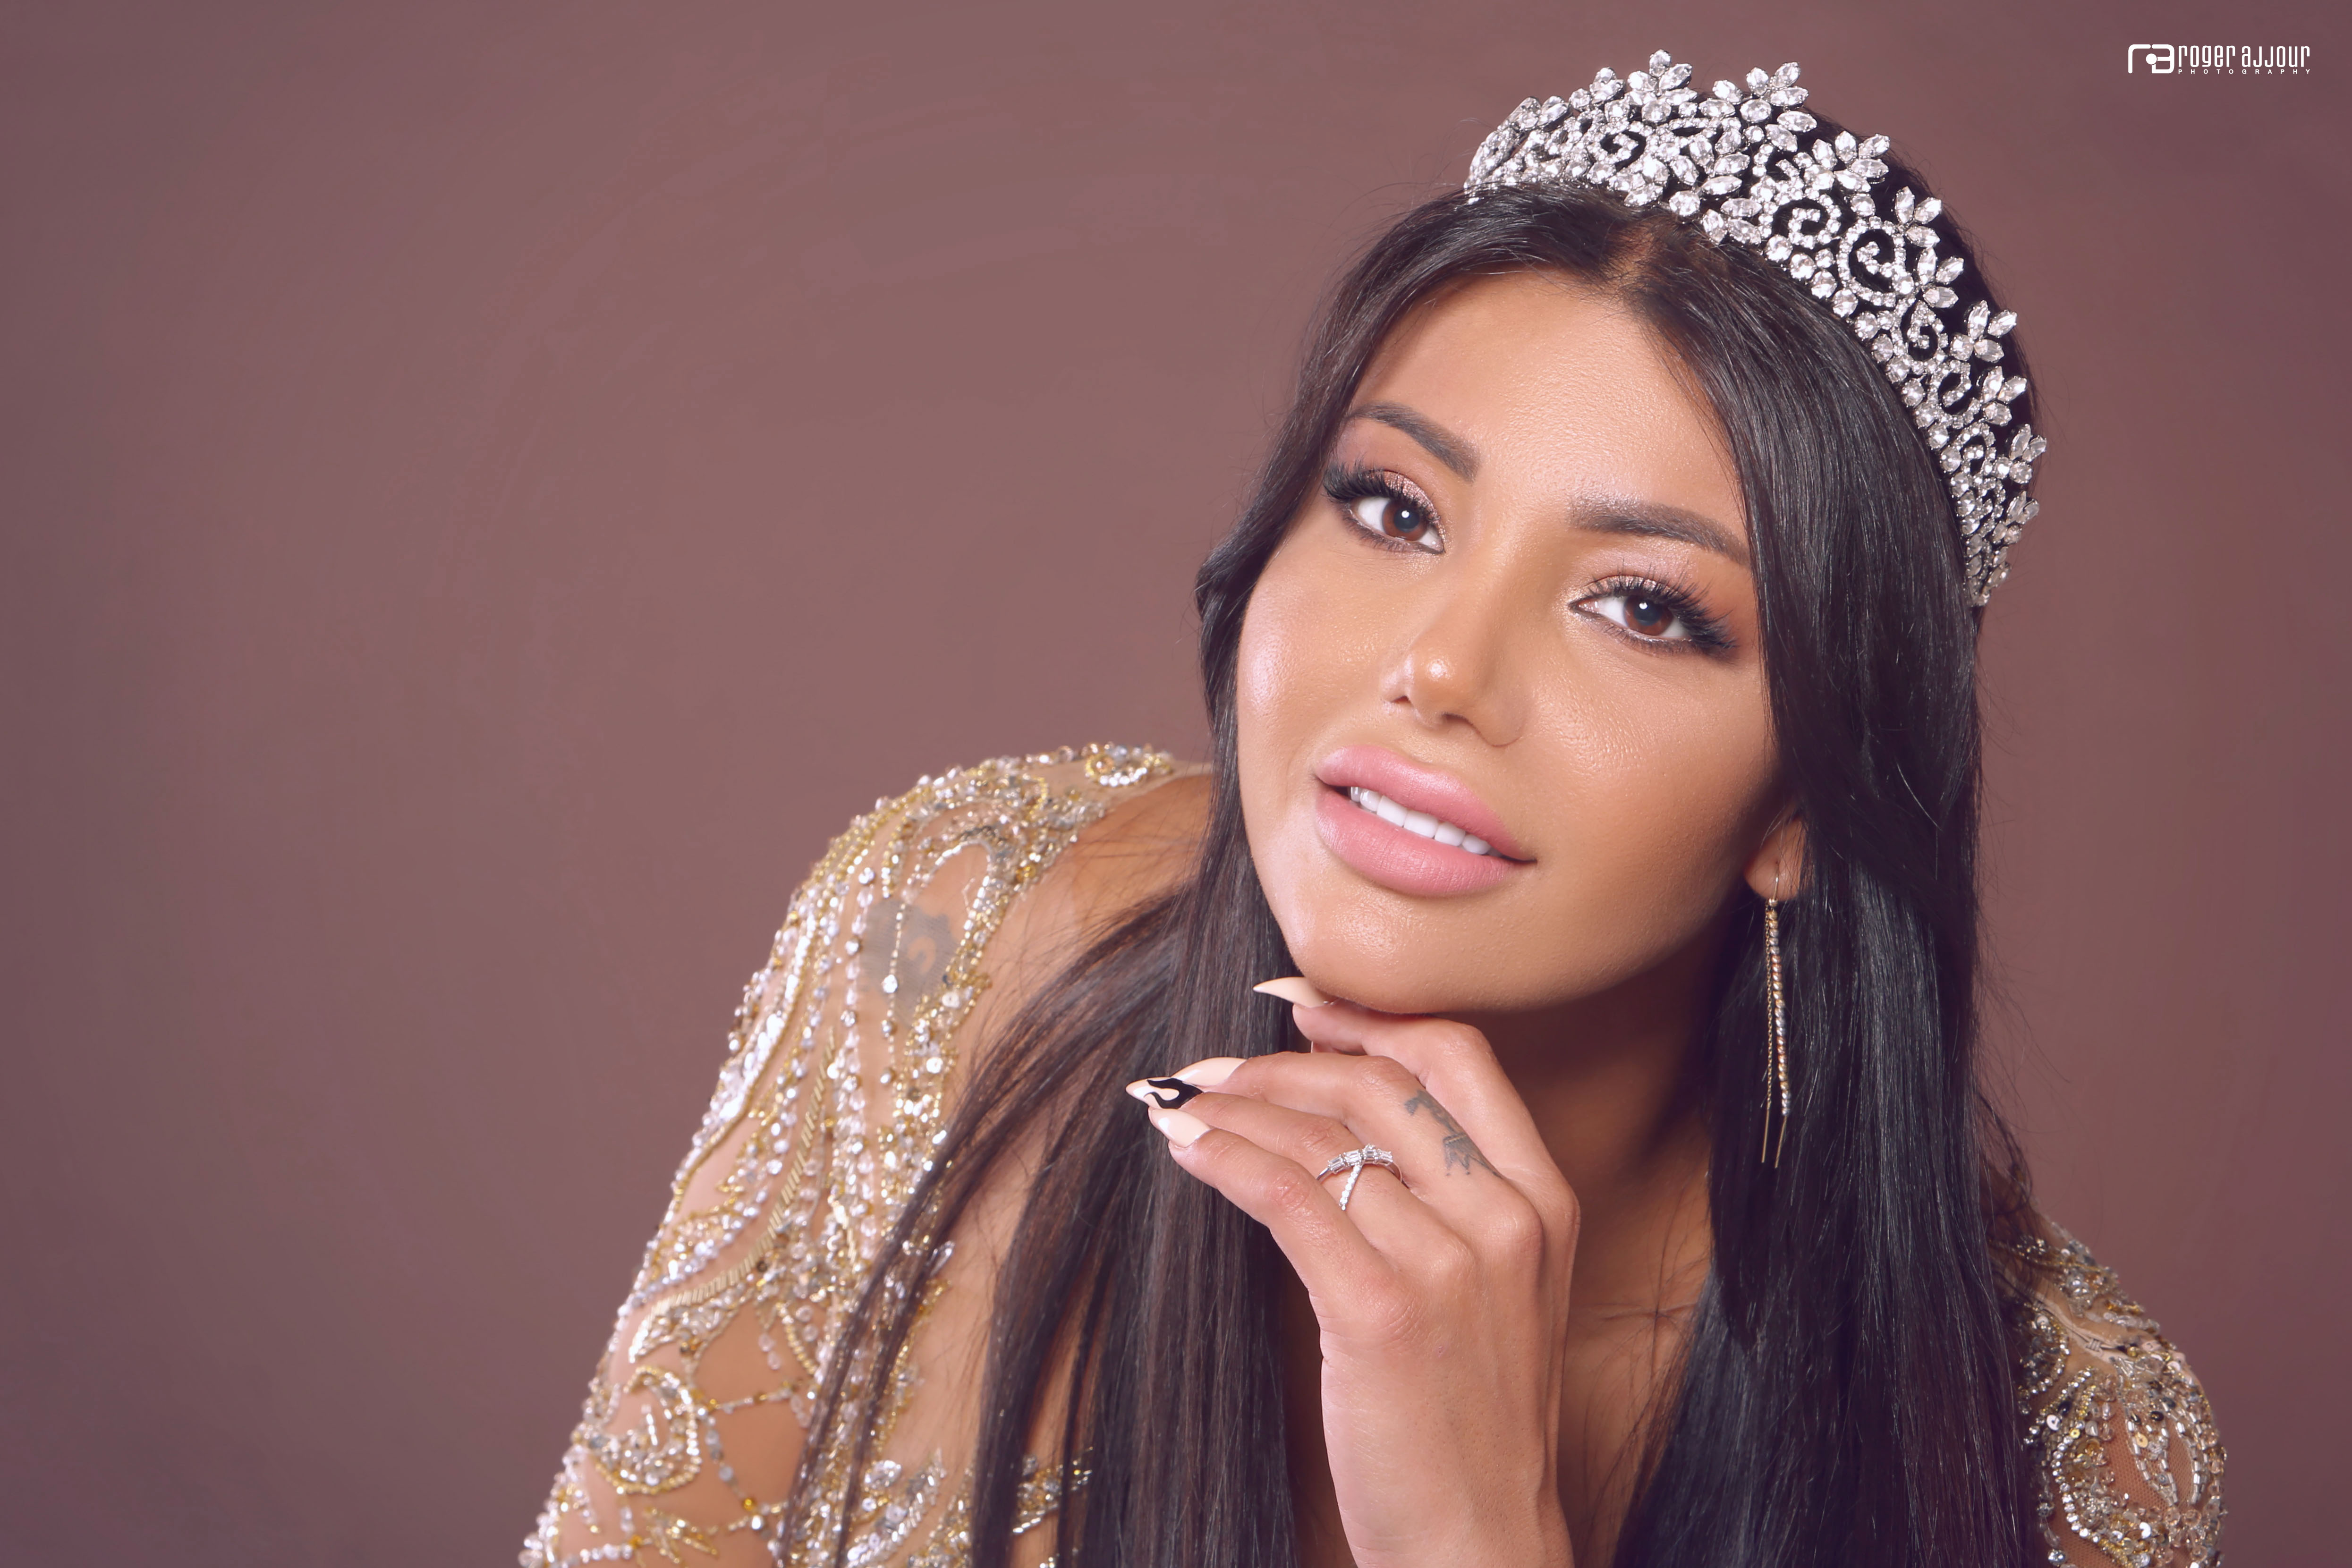 ملاك الفيضي ملكة جمال العراق المغترب للعام 2021/2020!